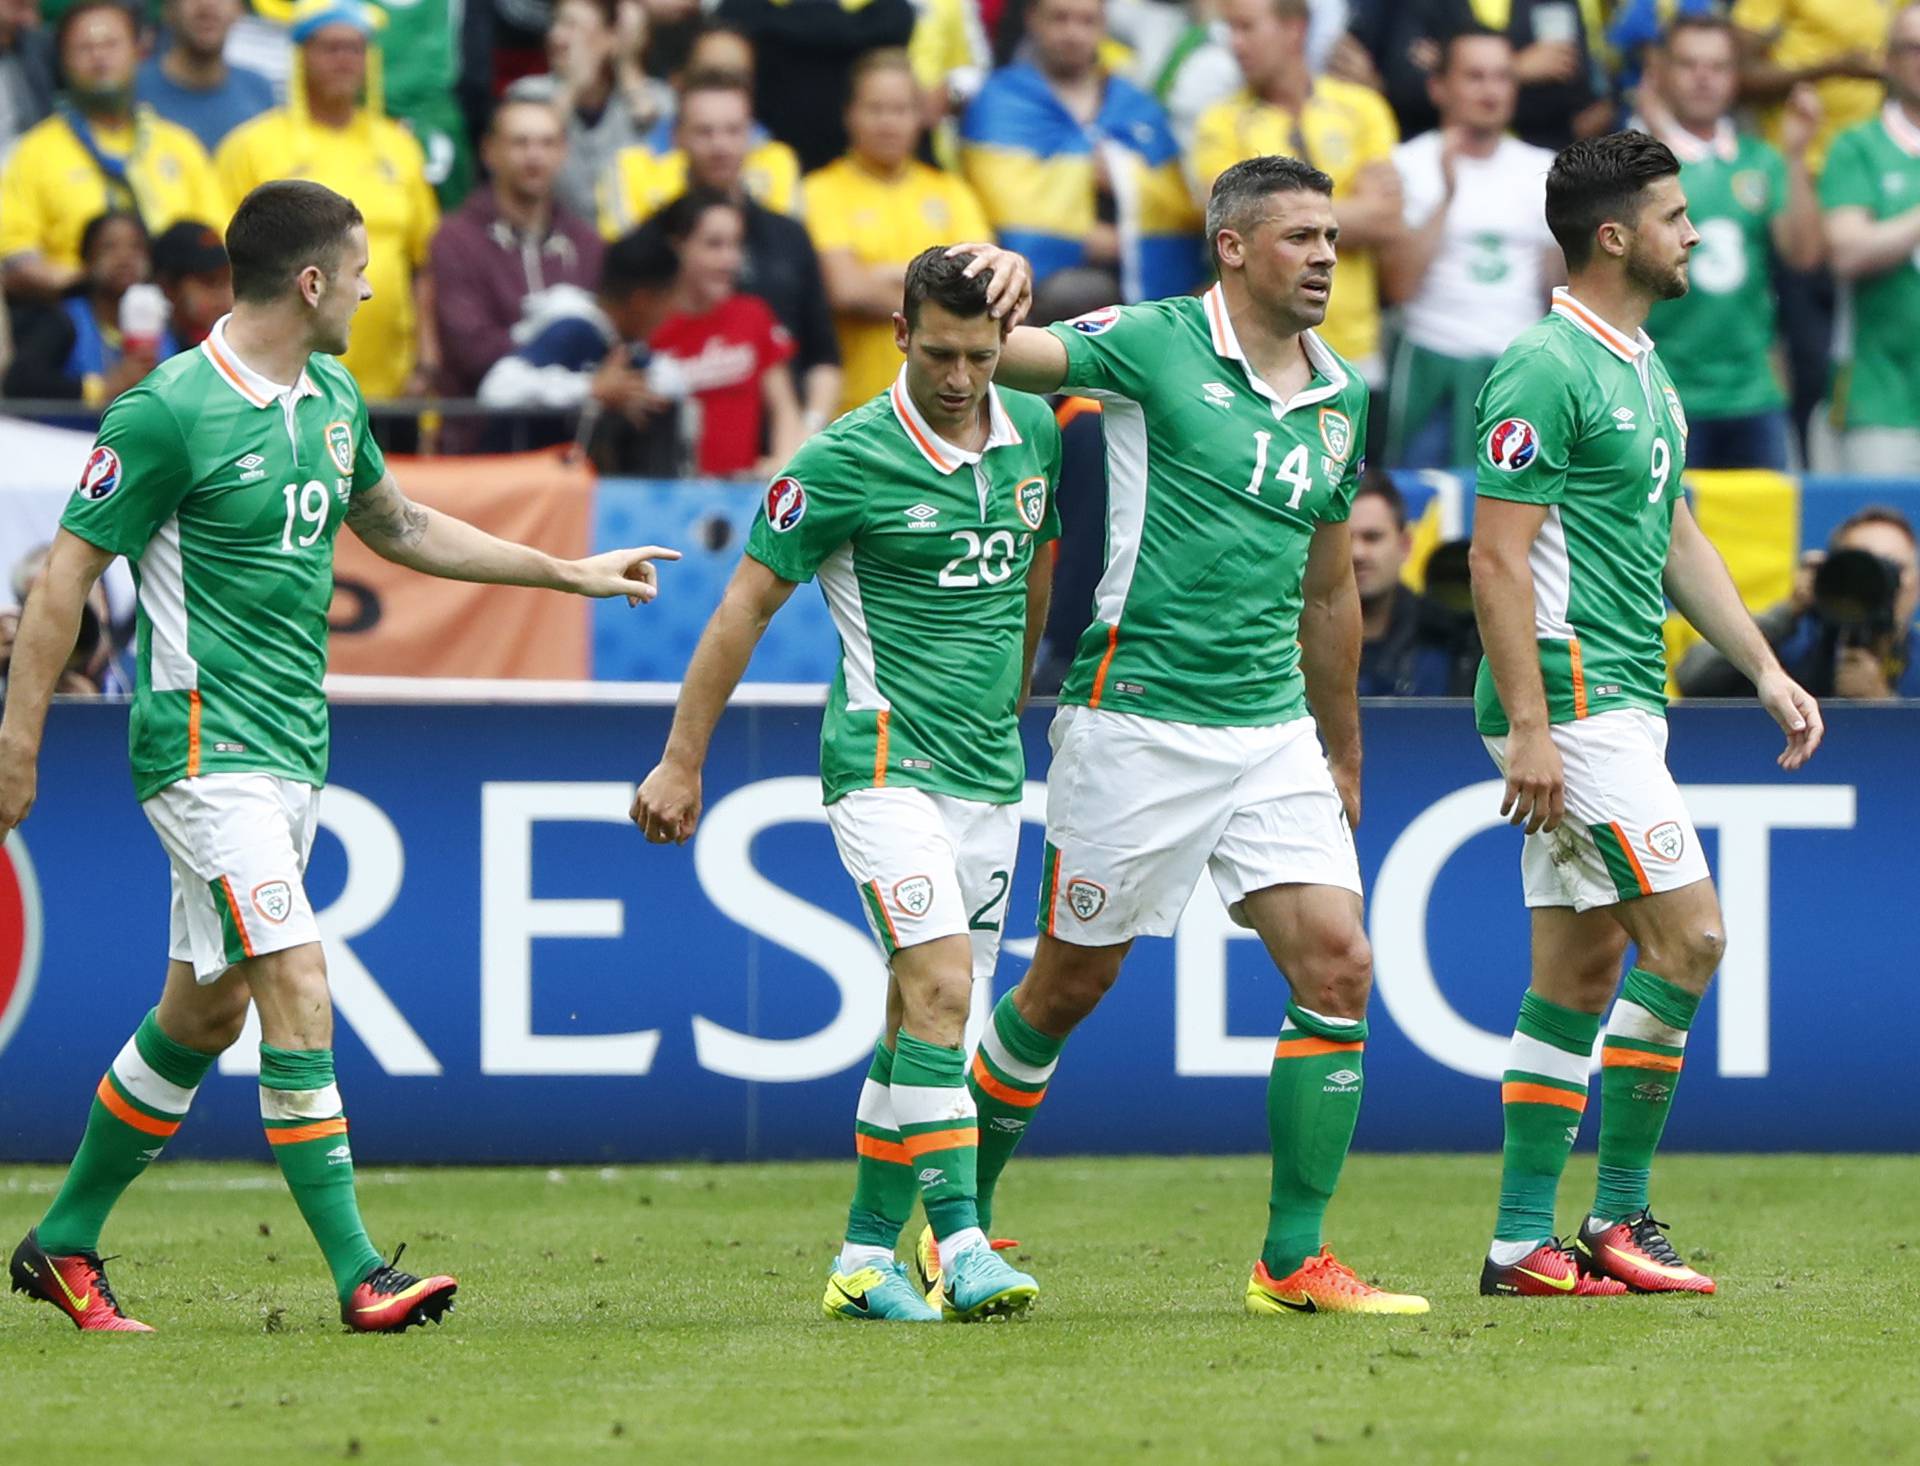 Republic of Ireland v Sweden - EURO 2016 - Group E